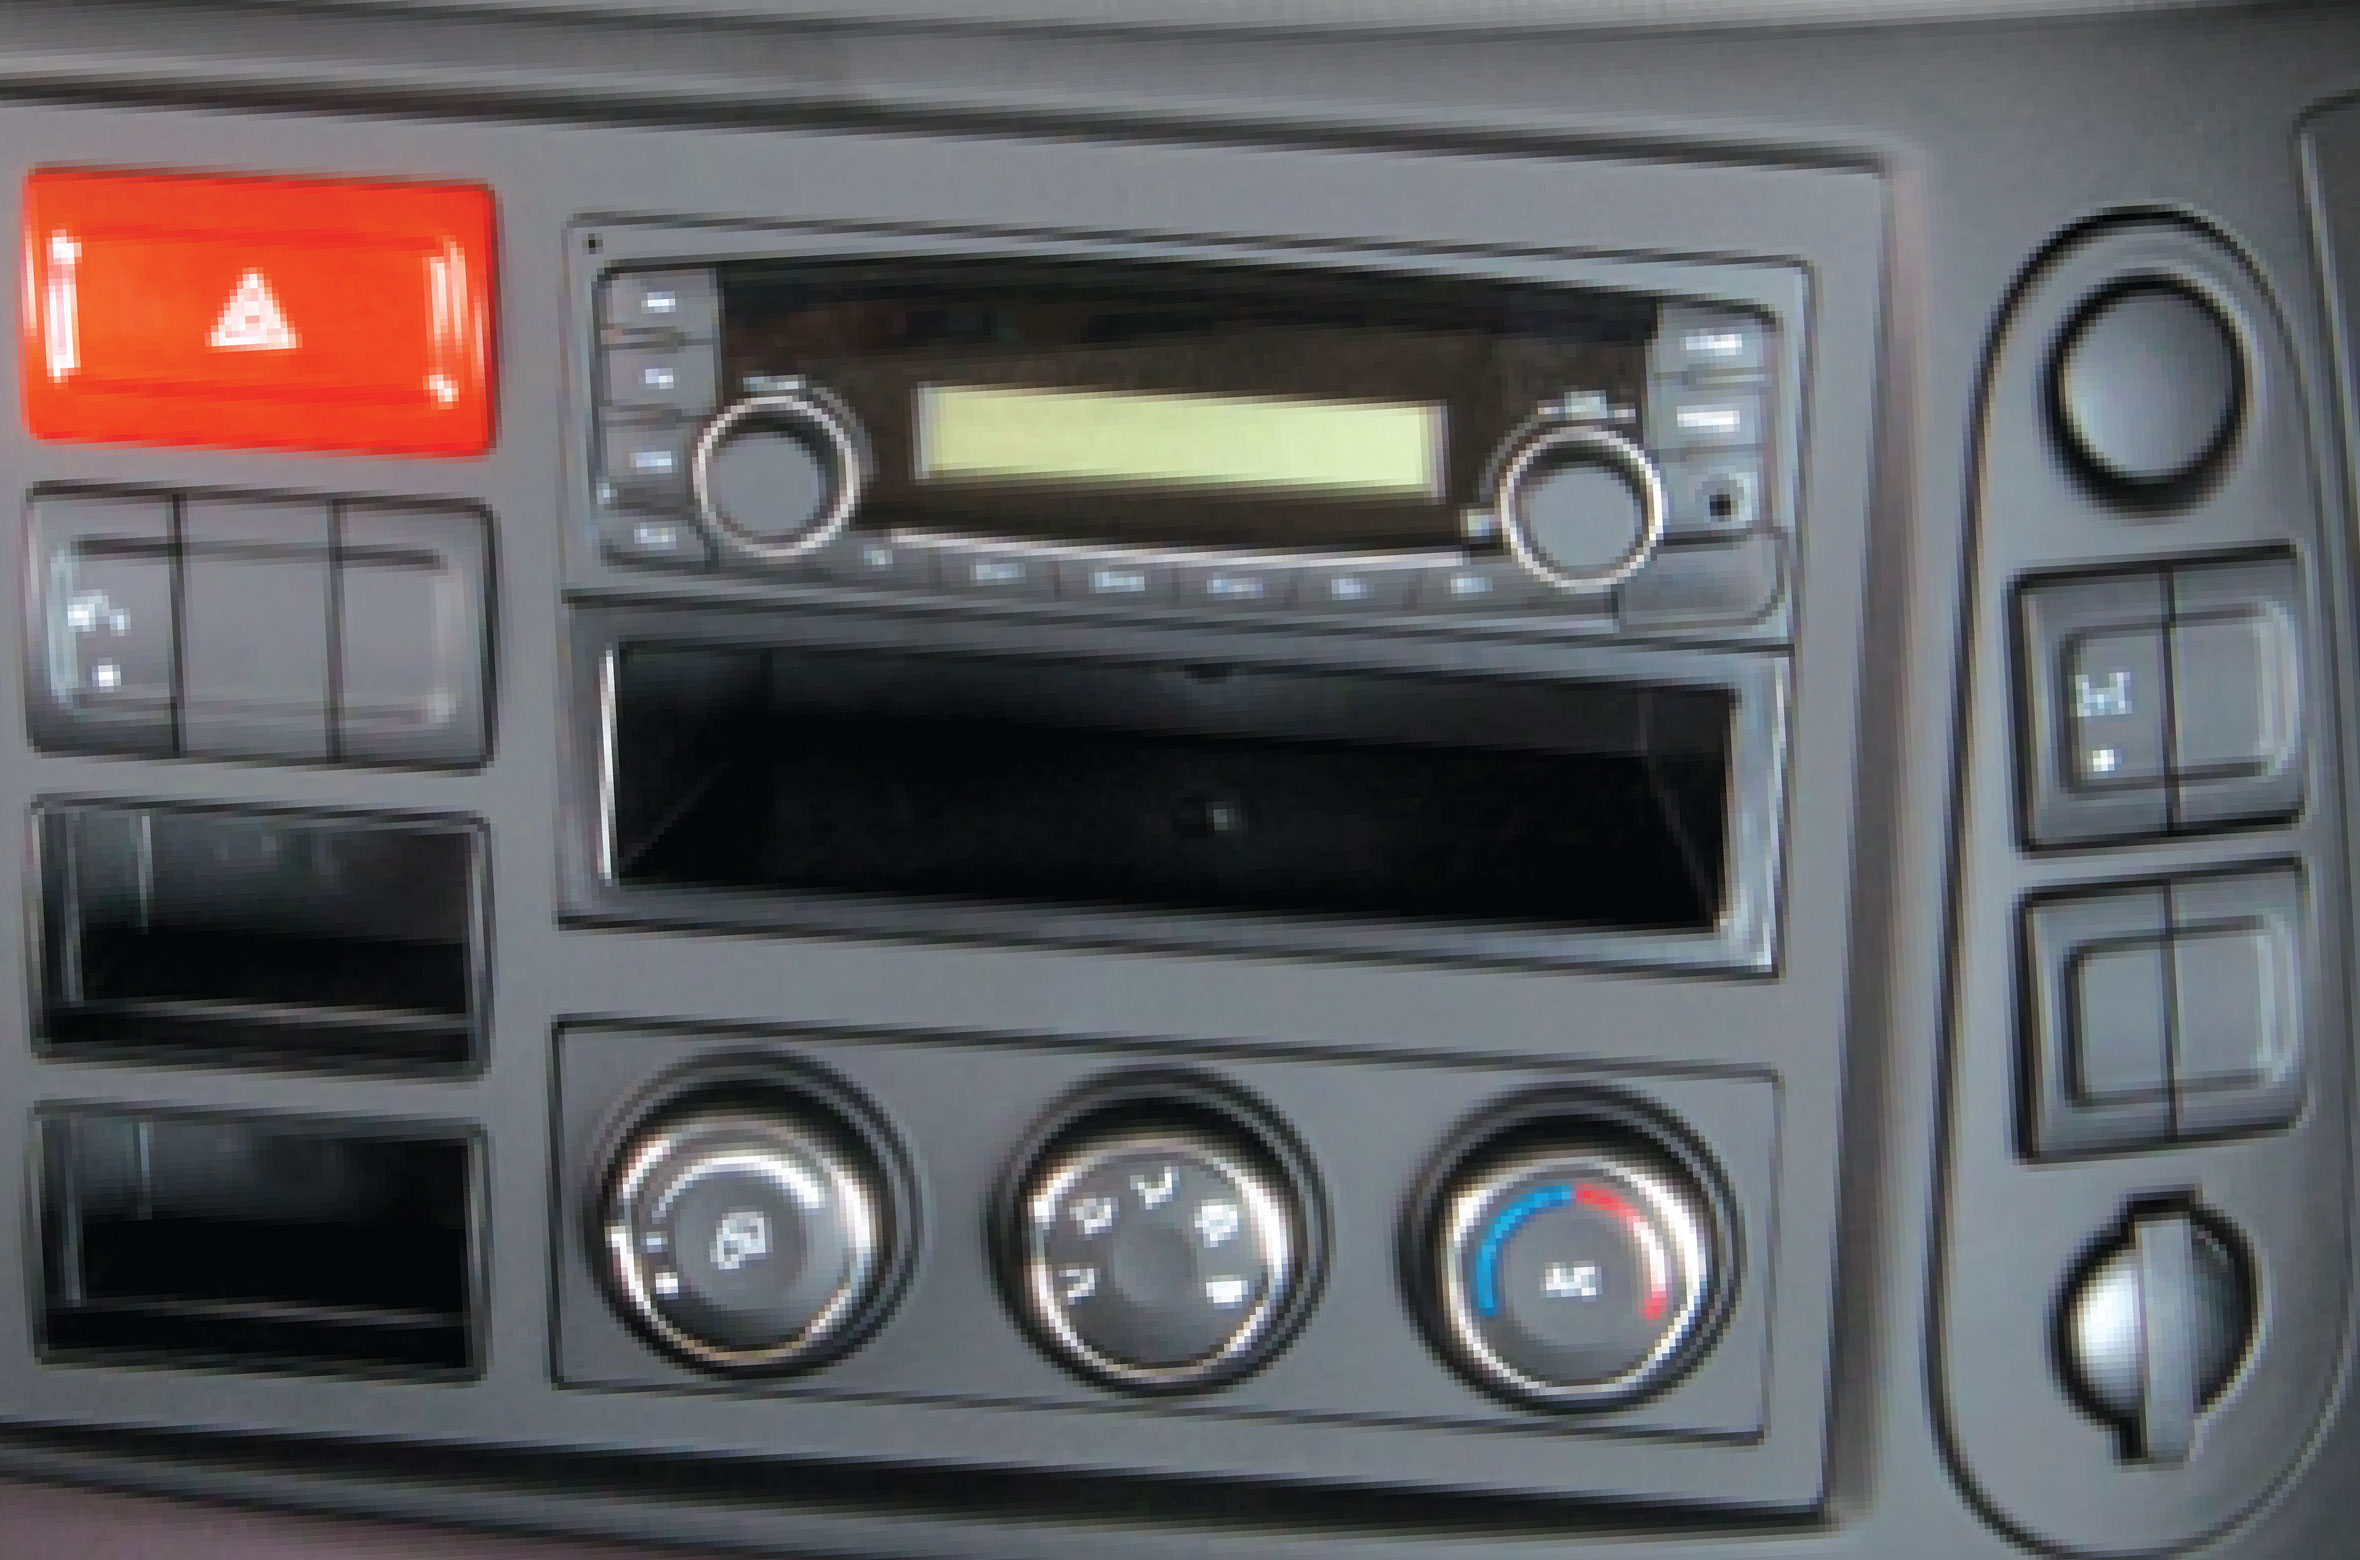  Radio, máy nghe nhạc và cụm điều khiển hệ thống điều hòa nhiệt độ.